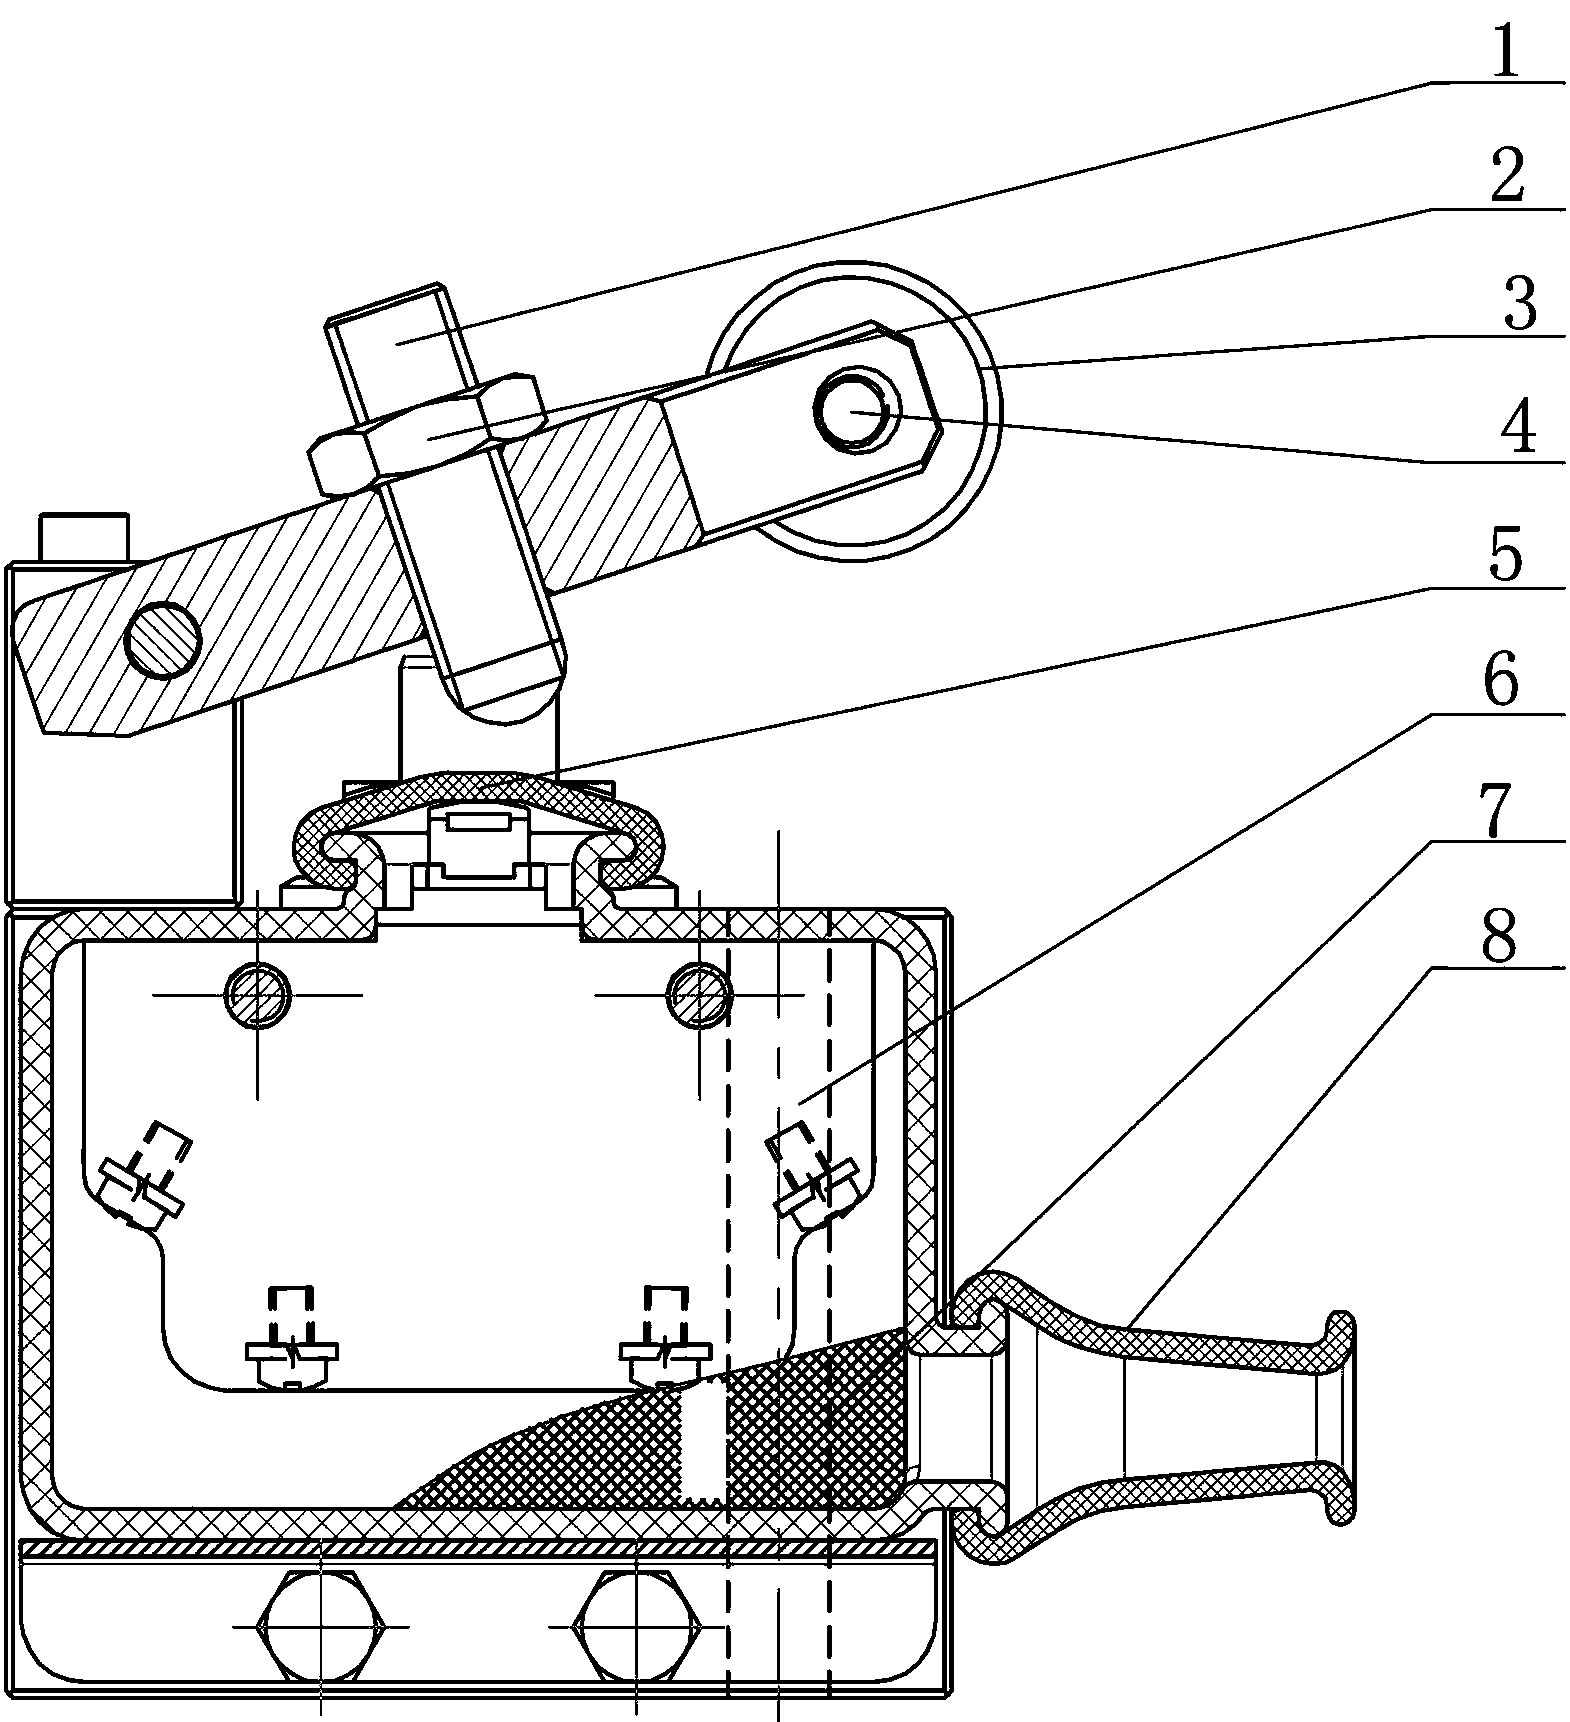 Lever valve